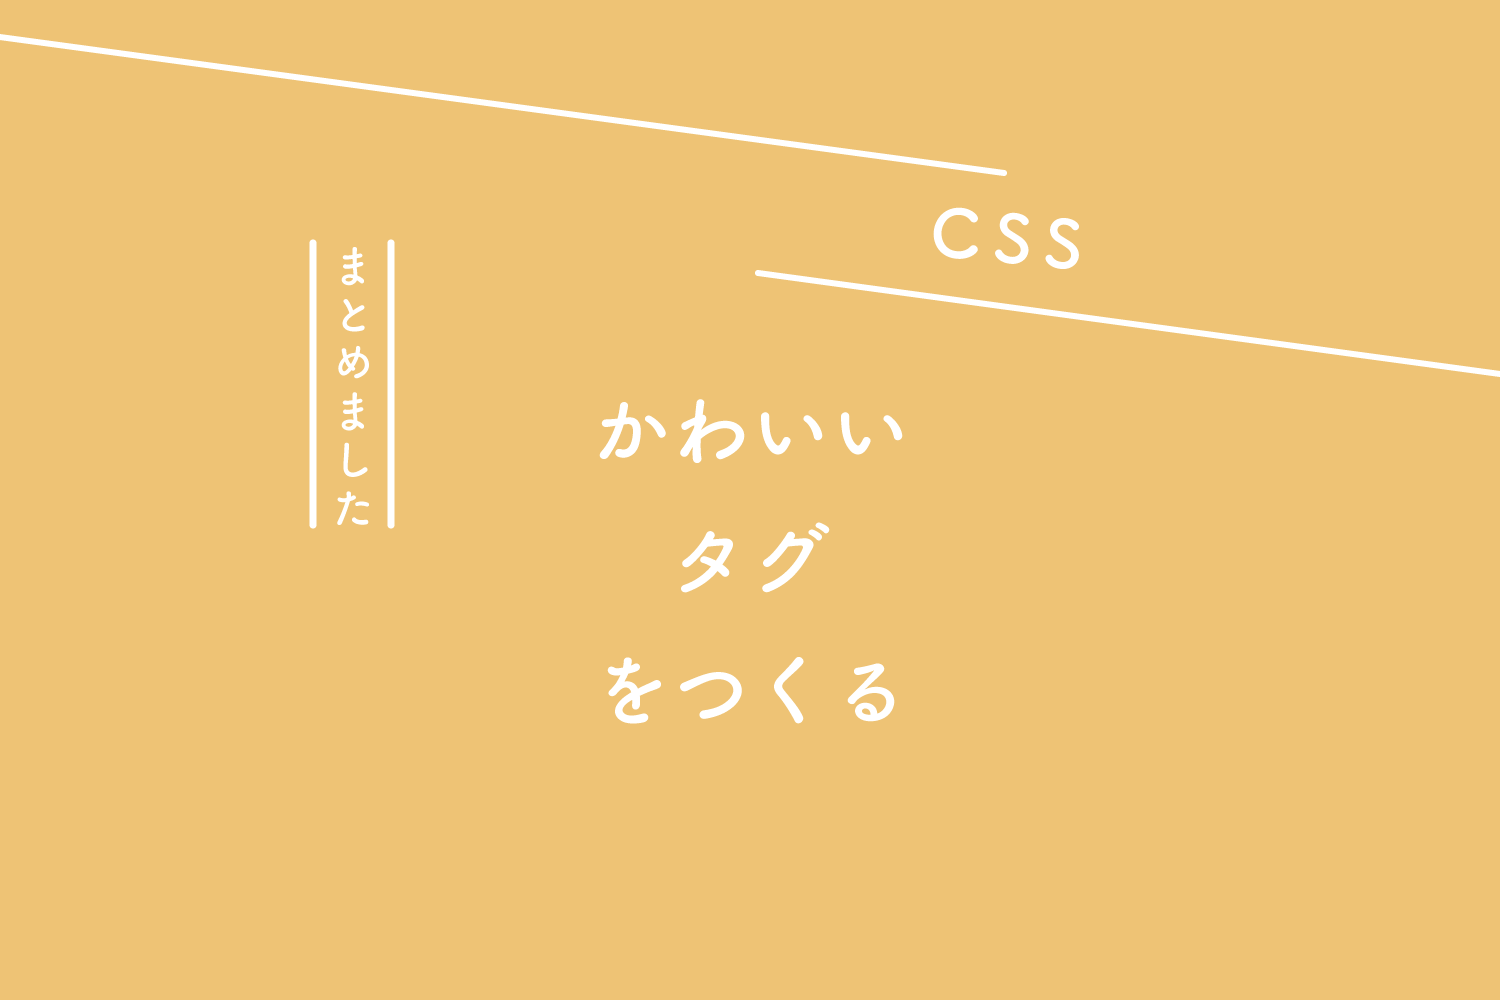 【CSS】かわいいタグをつくる